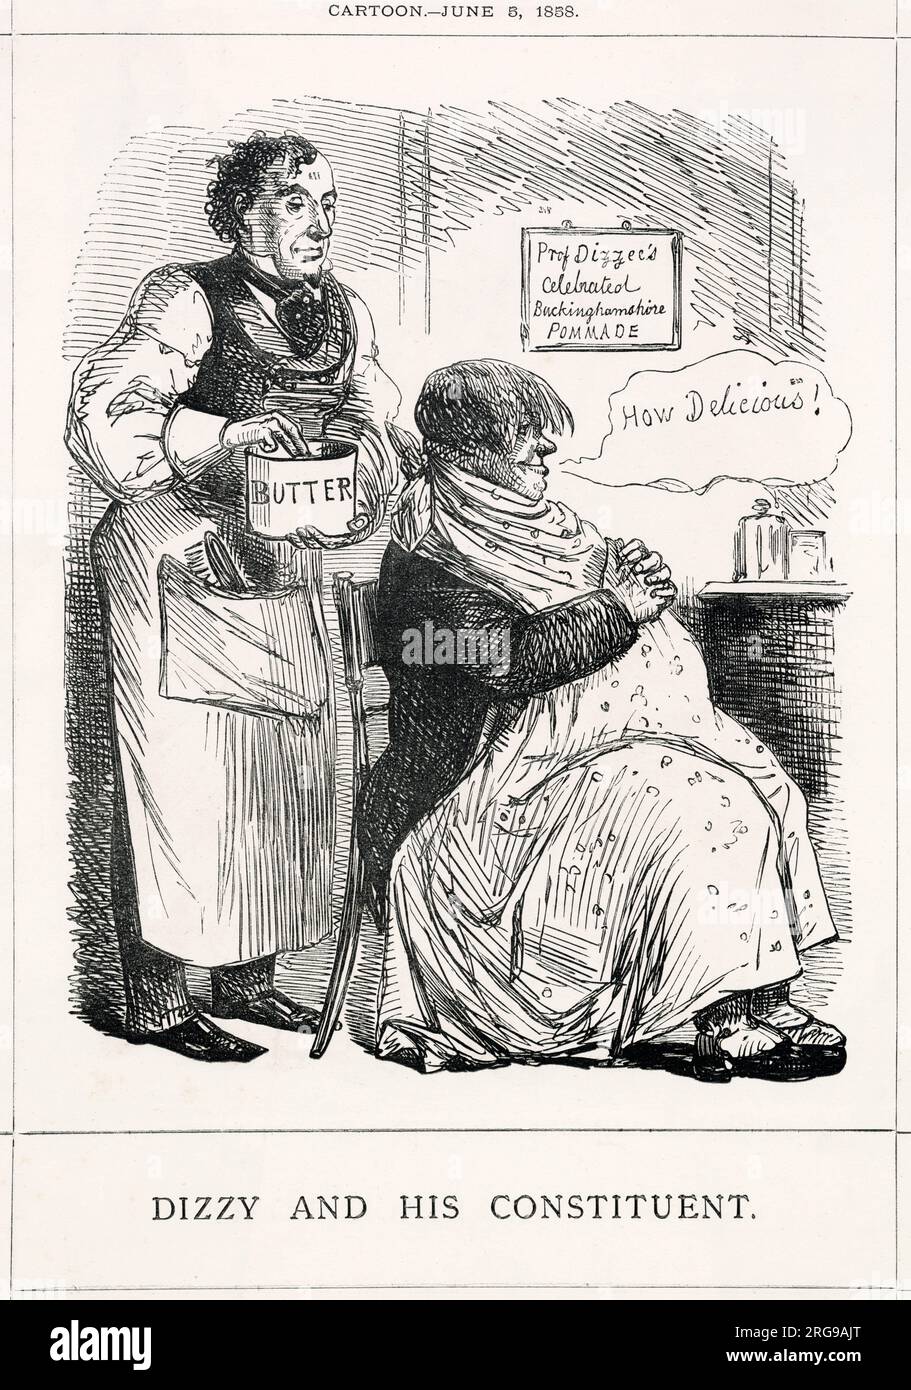 Cartoon, Dizzy und sein Verfassungsgebender -- ein satirischer Kommentar darüber, wie Benjamin Disraeli seine Wähler in Buckinghamshire in seinen Reden "schmoren" konnte. Stockfoto